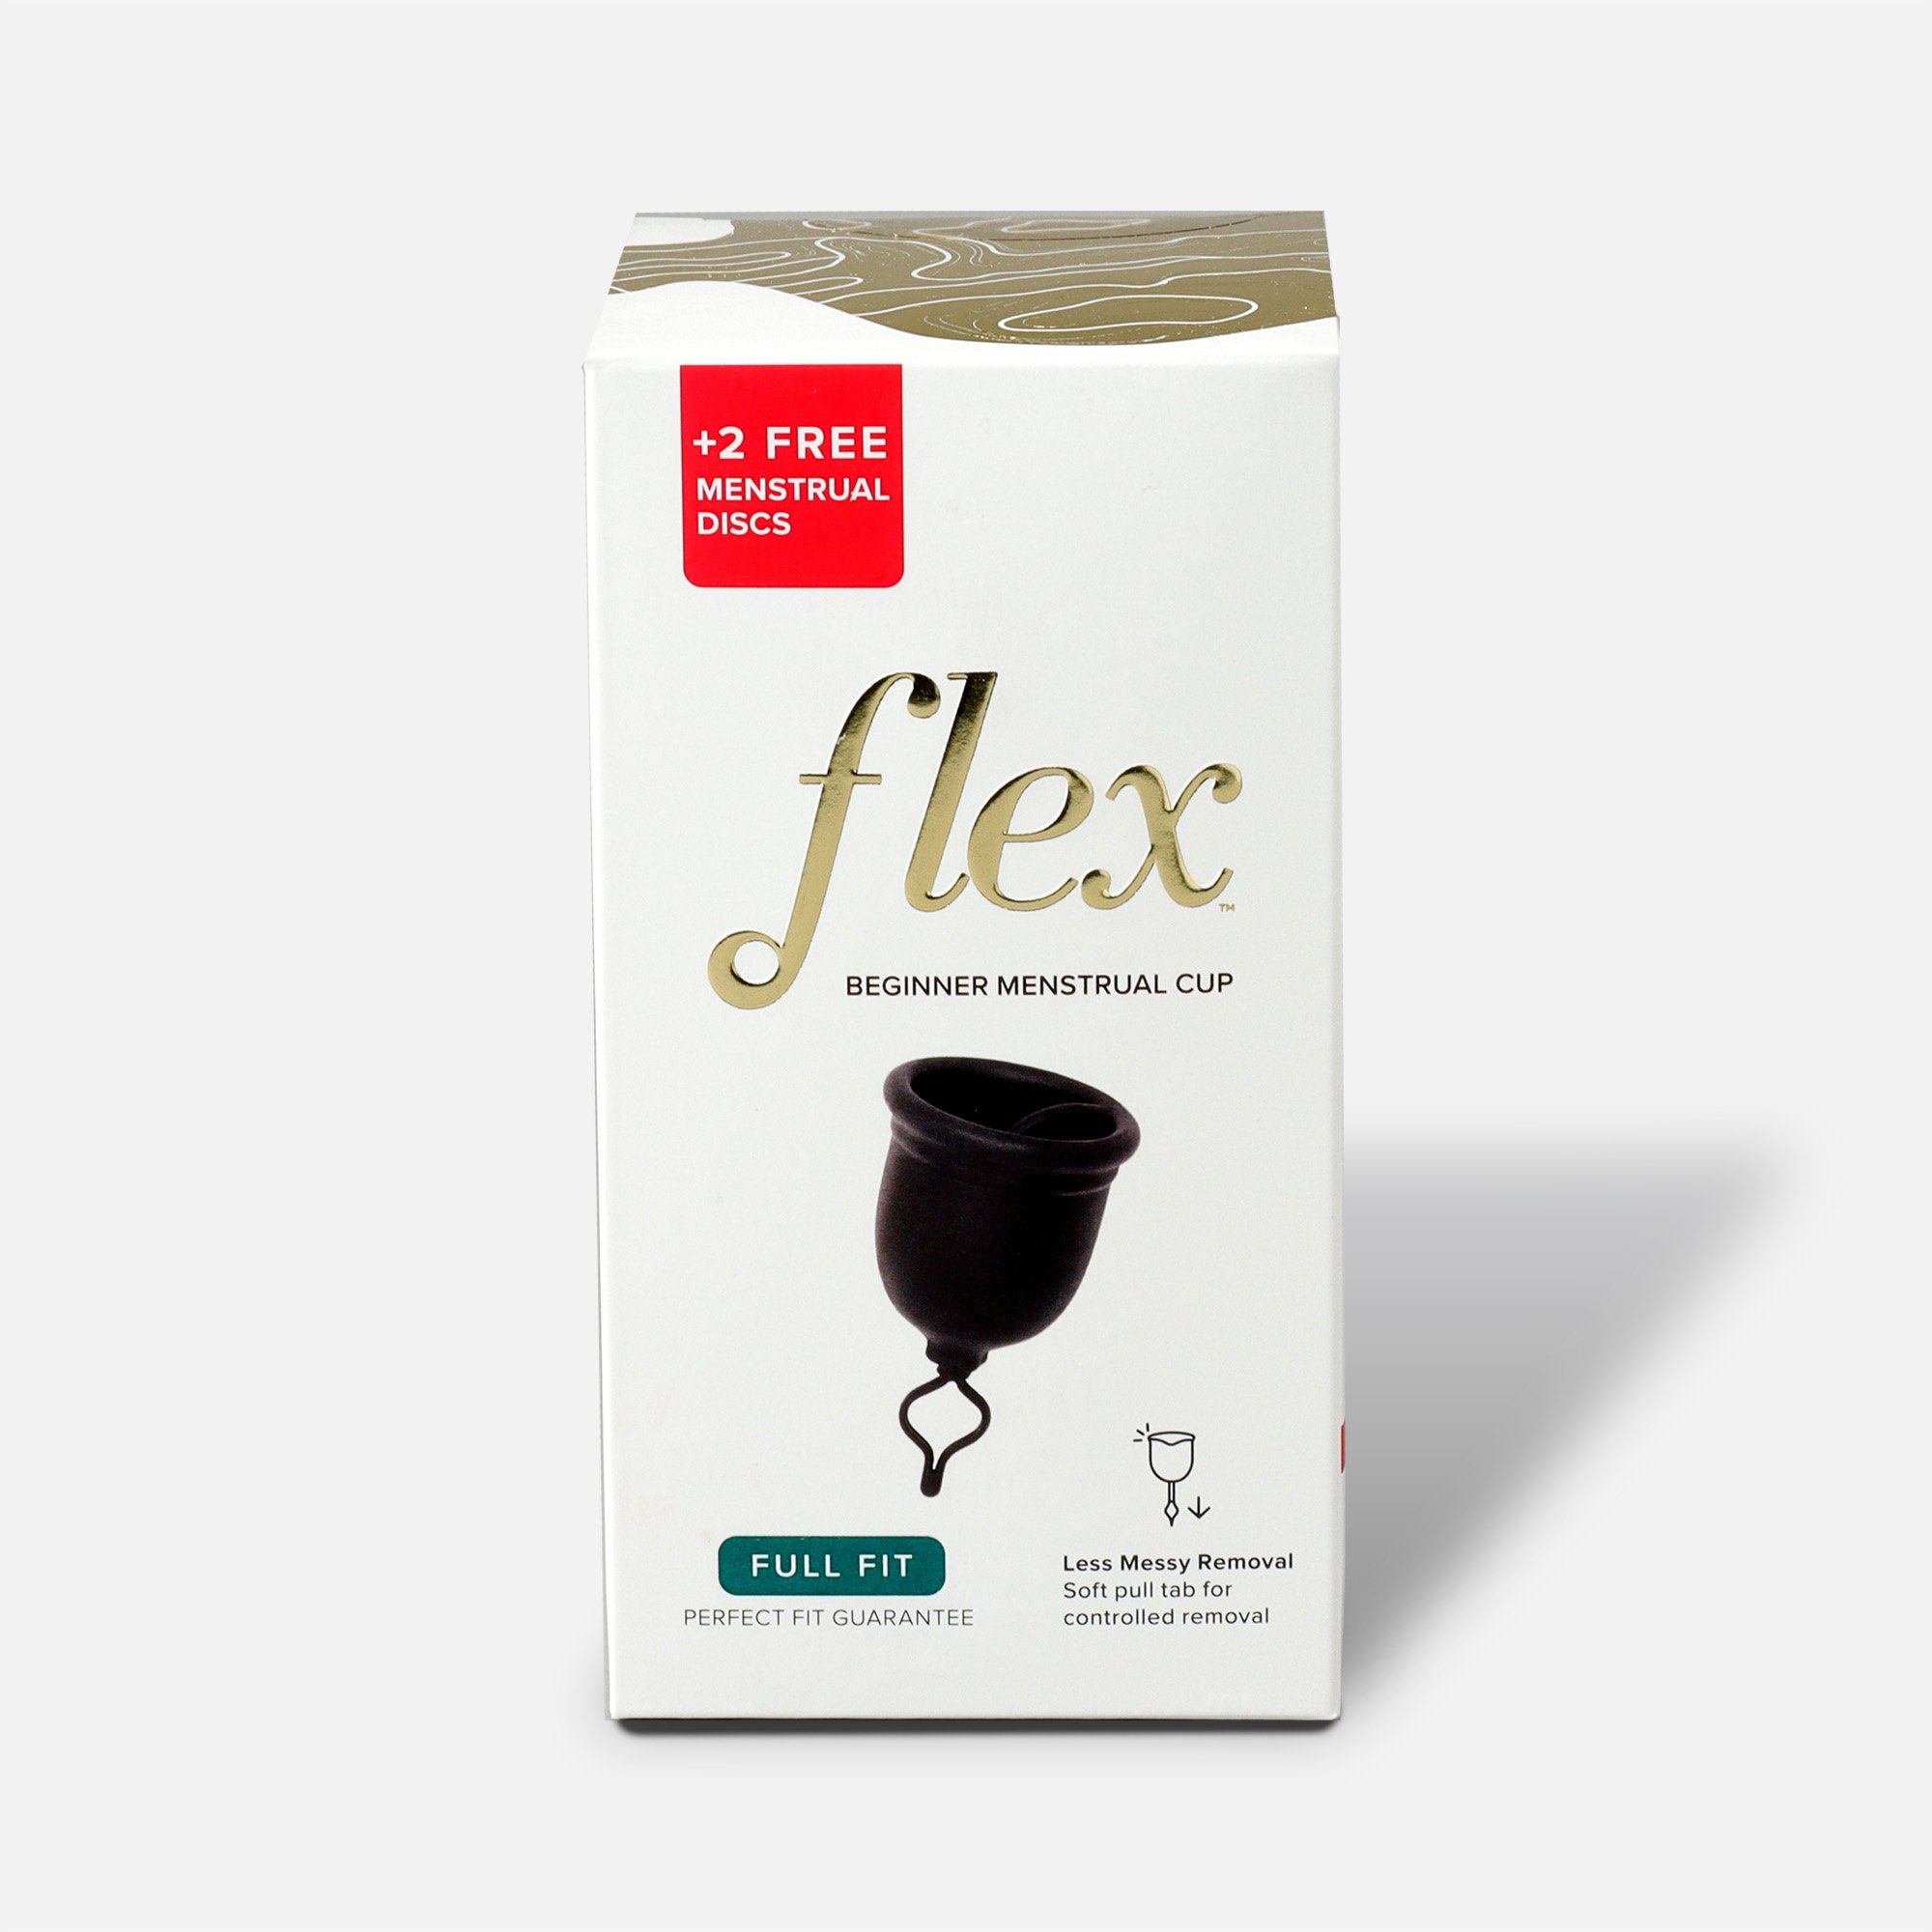 FSA Eligible  FLEX Menstrual Cup (includes 2 FREE Menstrual Discs)